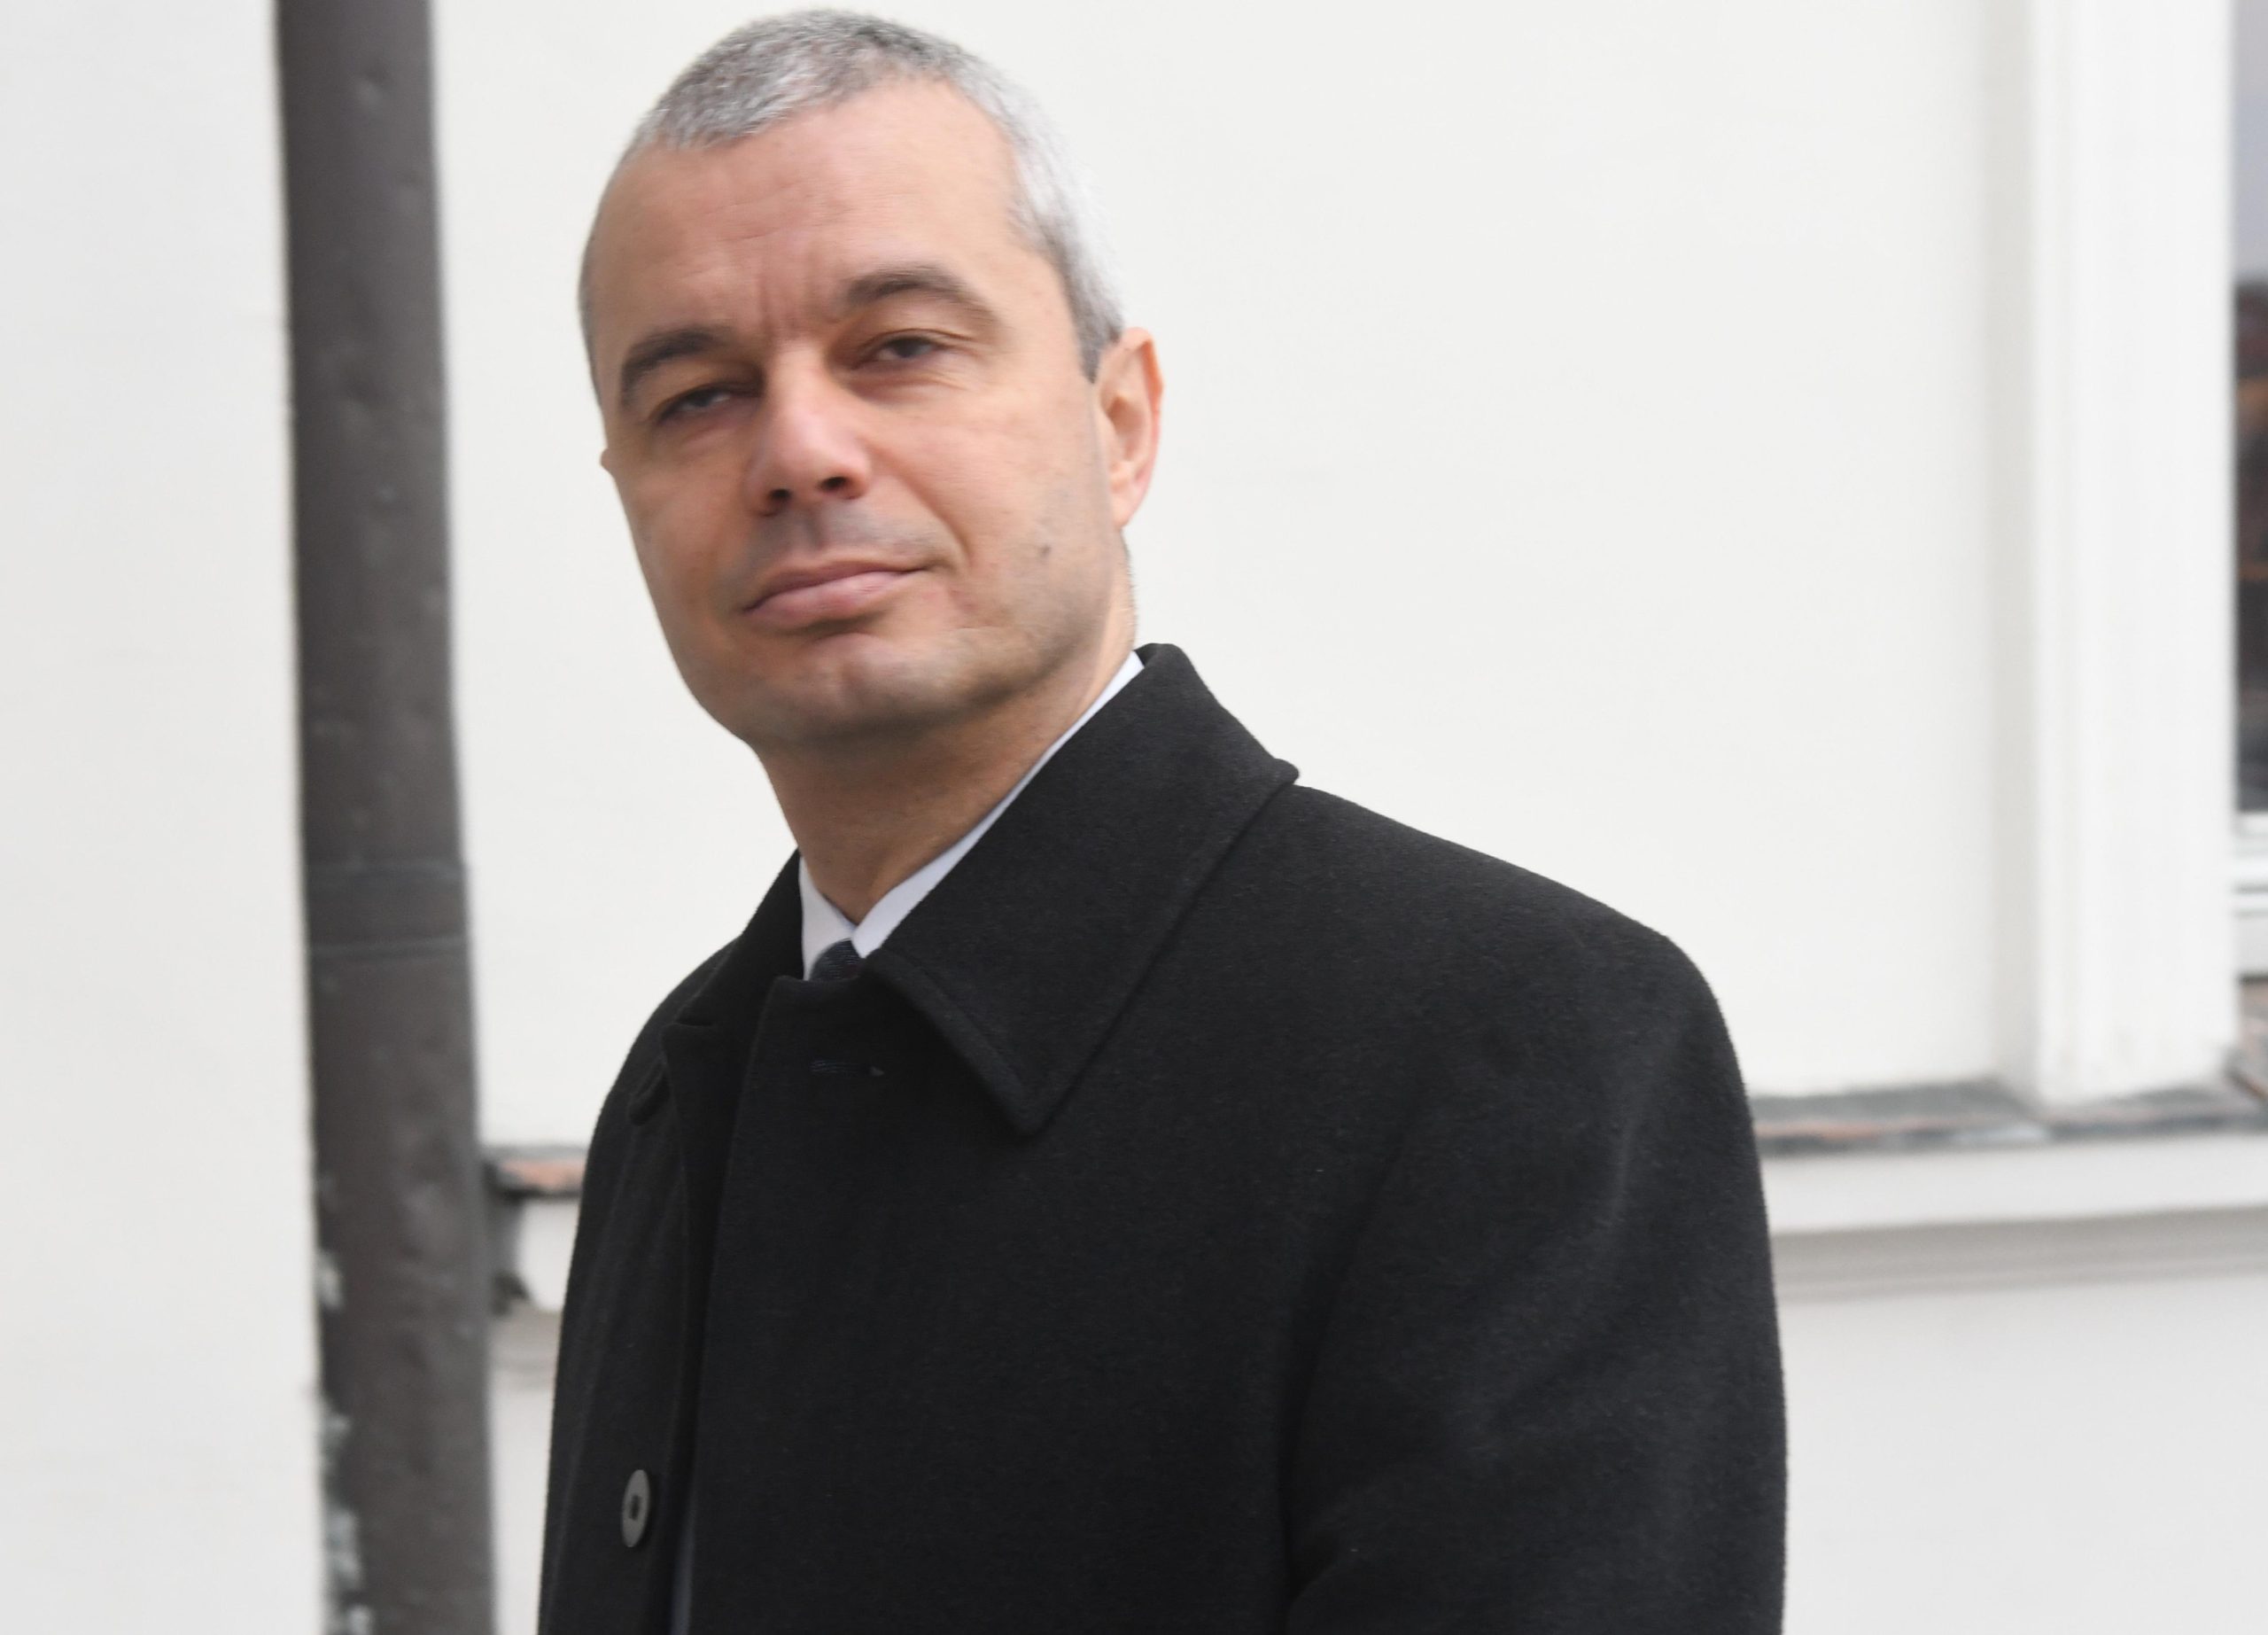 Лидерът на Възраждане“ Костадин Костадинов се възмути от протестите срещу